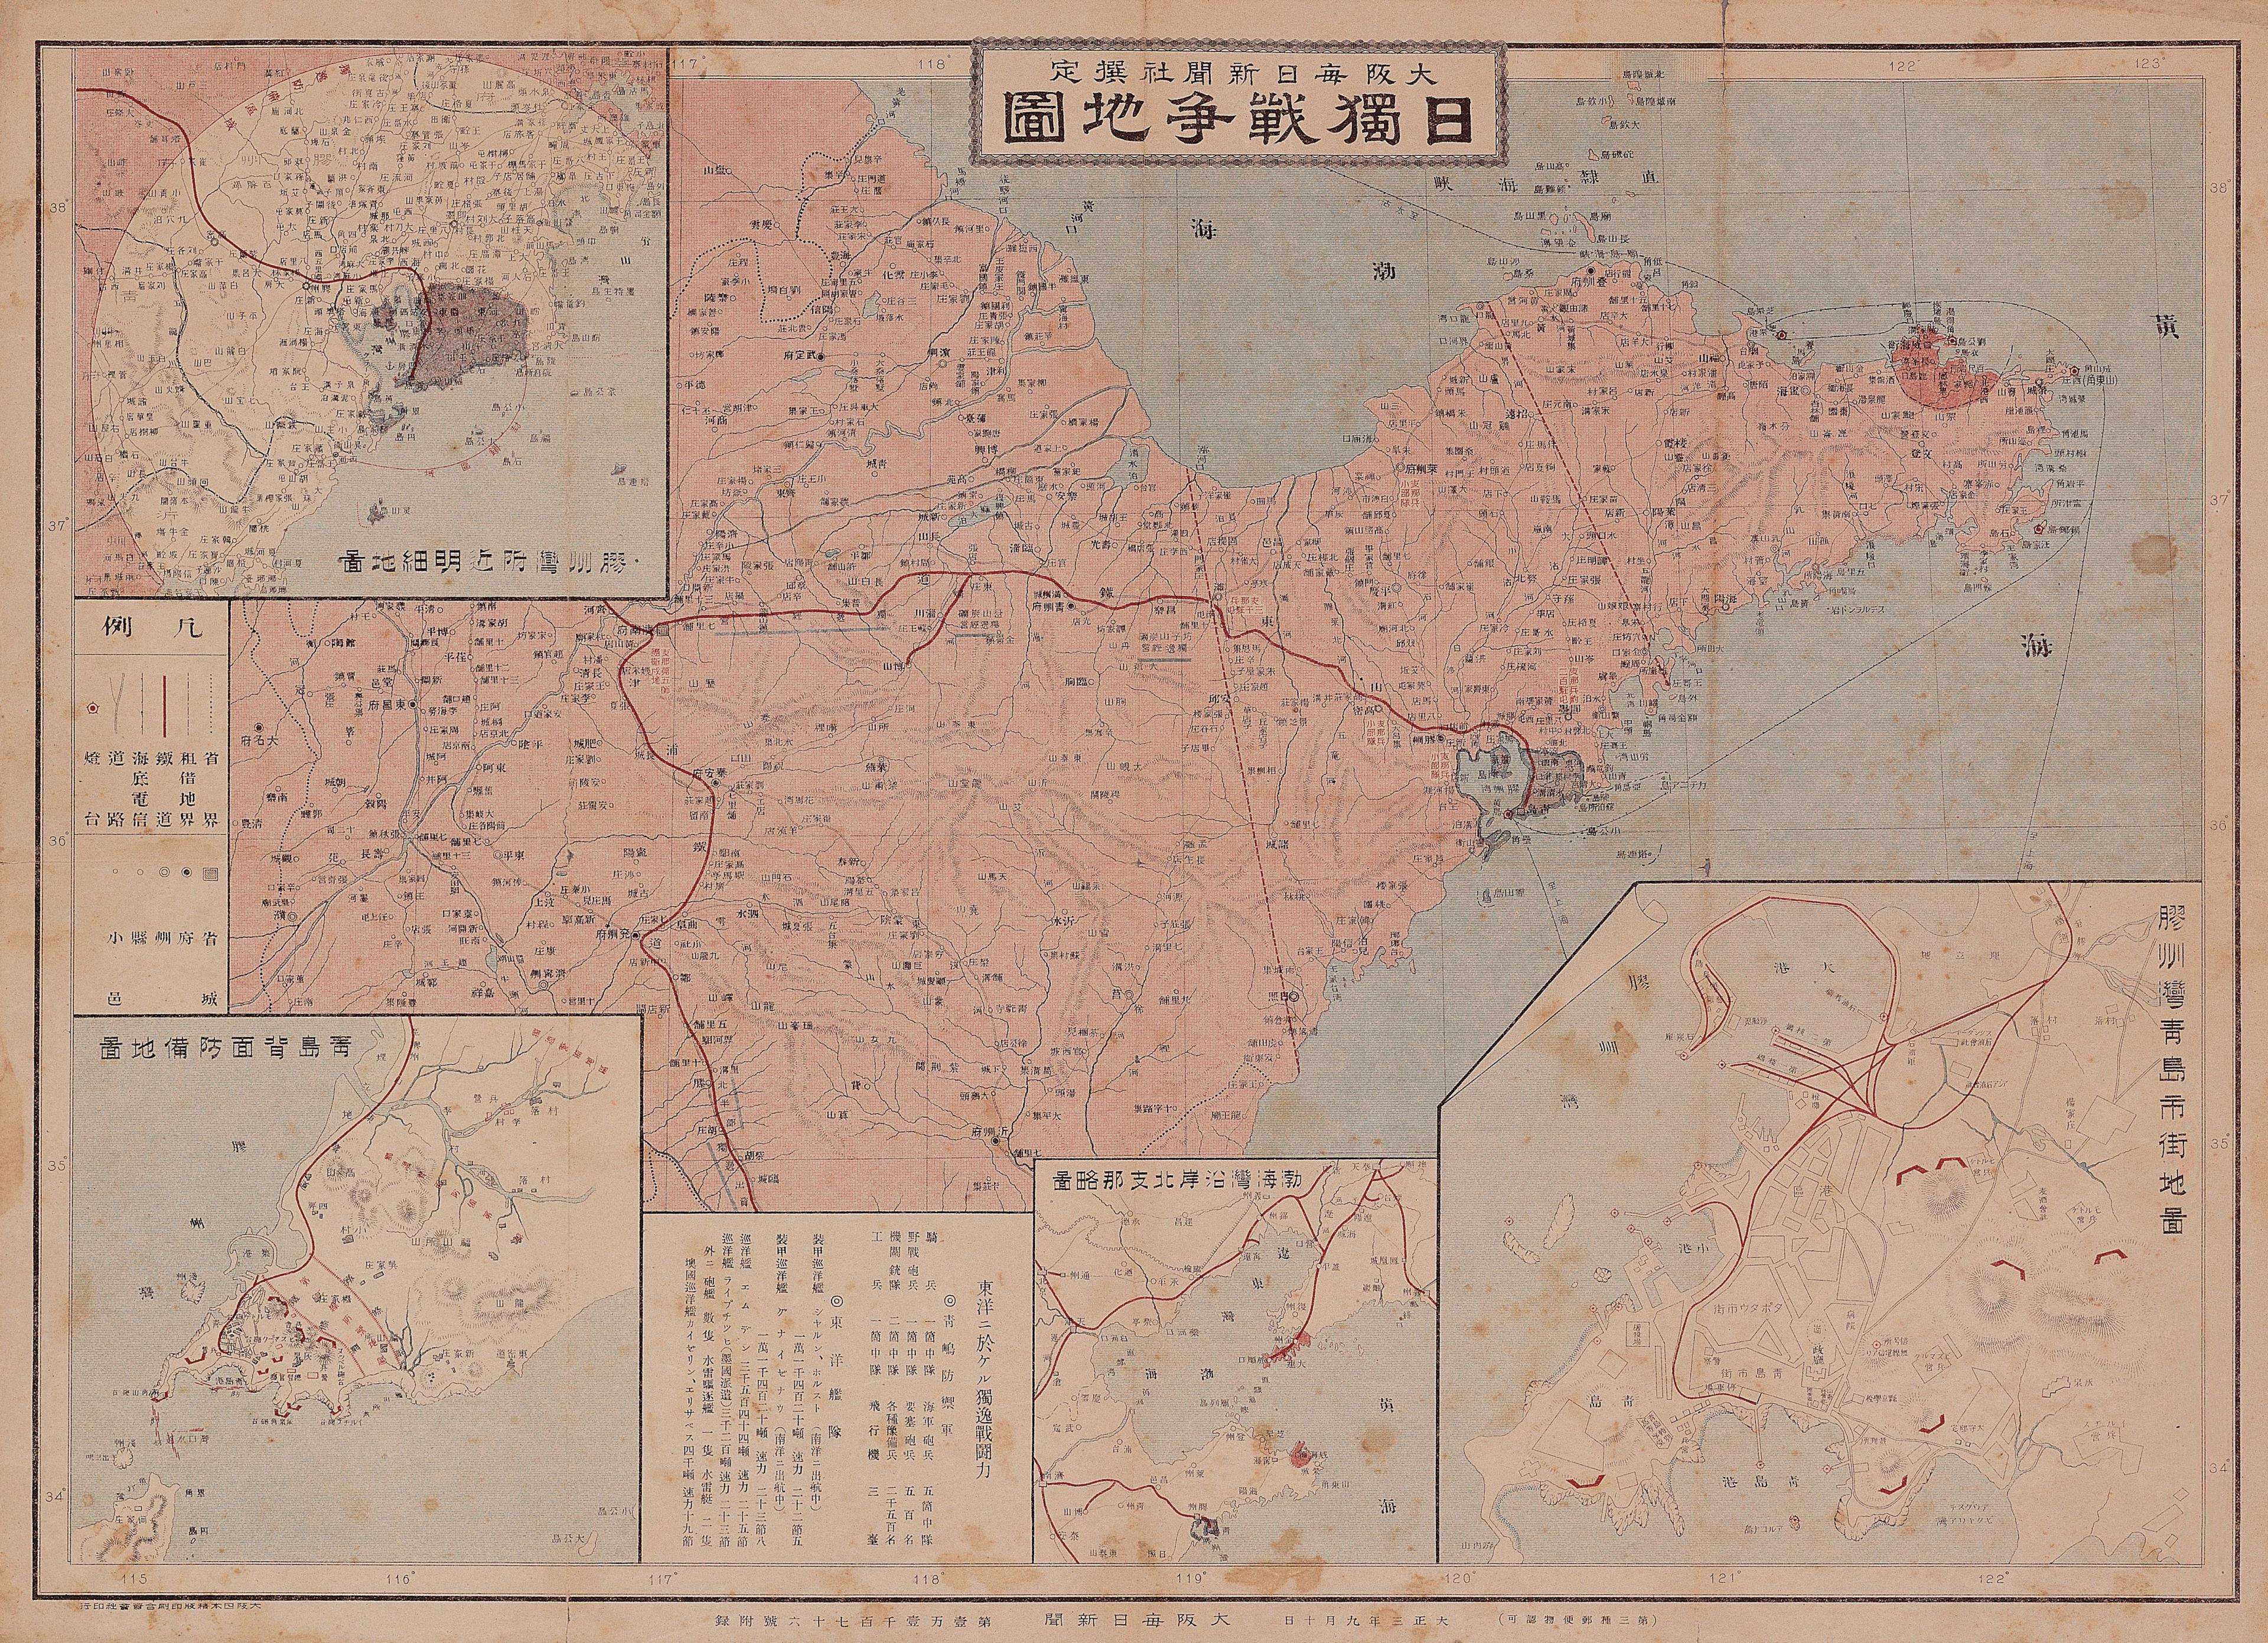 大阪每日新聞社〈日獨戰爭地圖〉 (共1張)